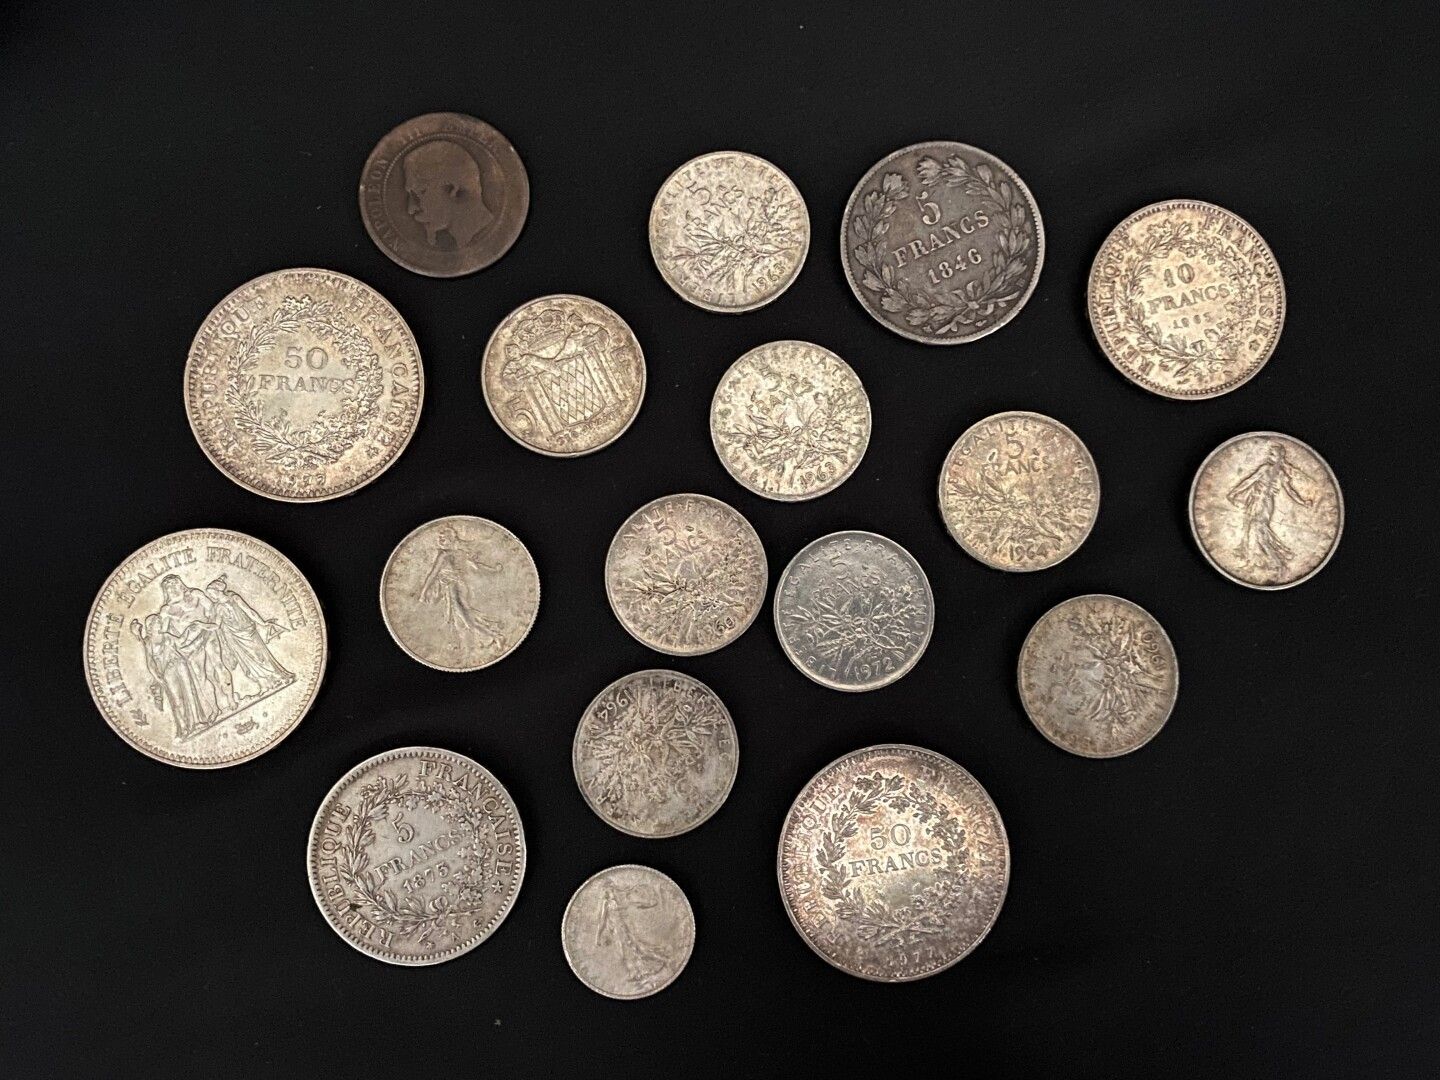 Null Lote de monedas de plata que incluye :

- 3 monedas de 50 francos (1975 y 1&hellip;